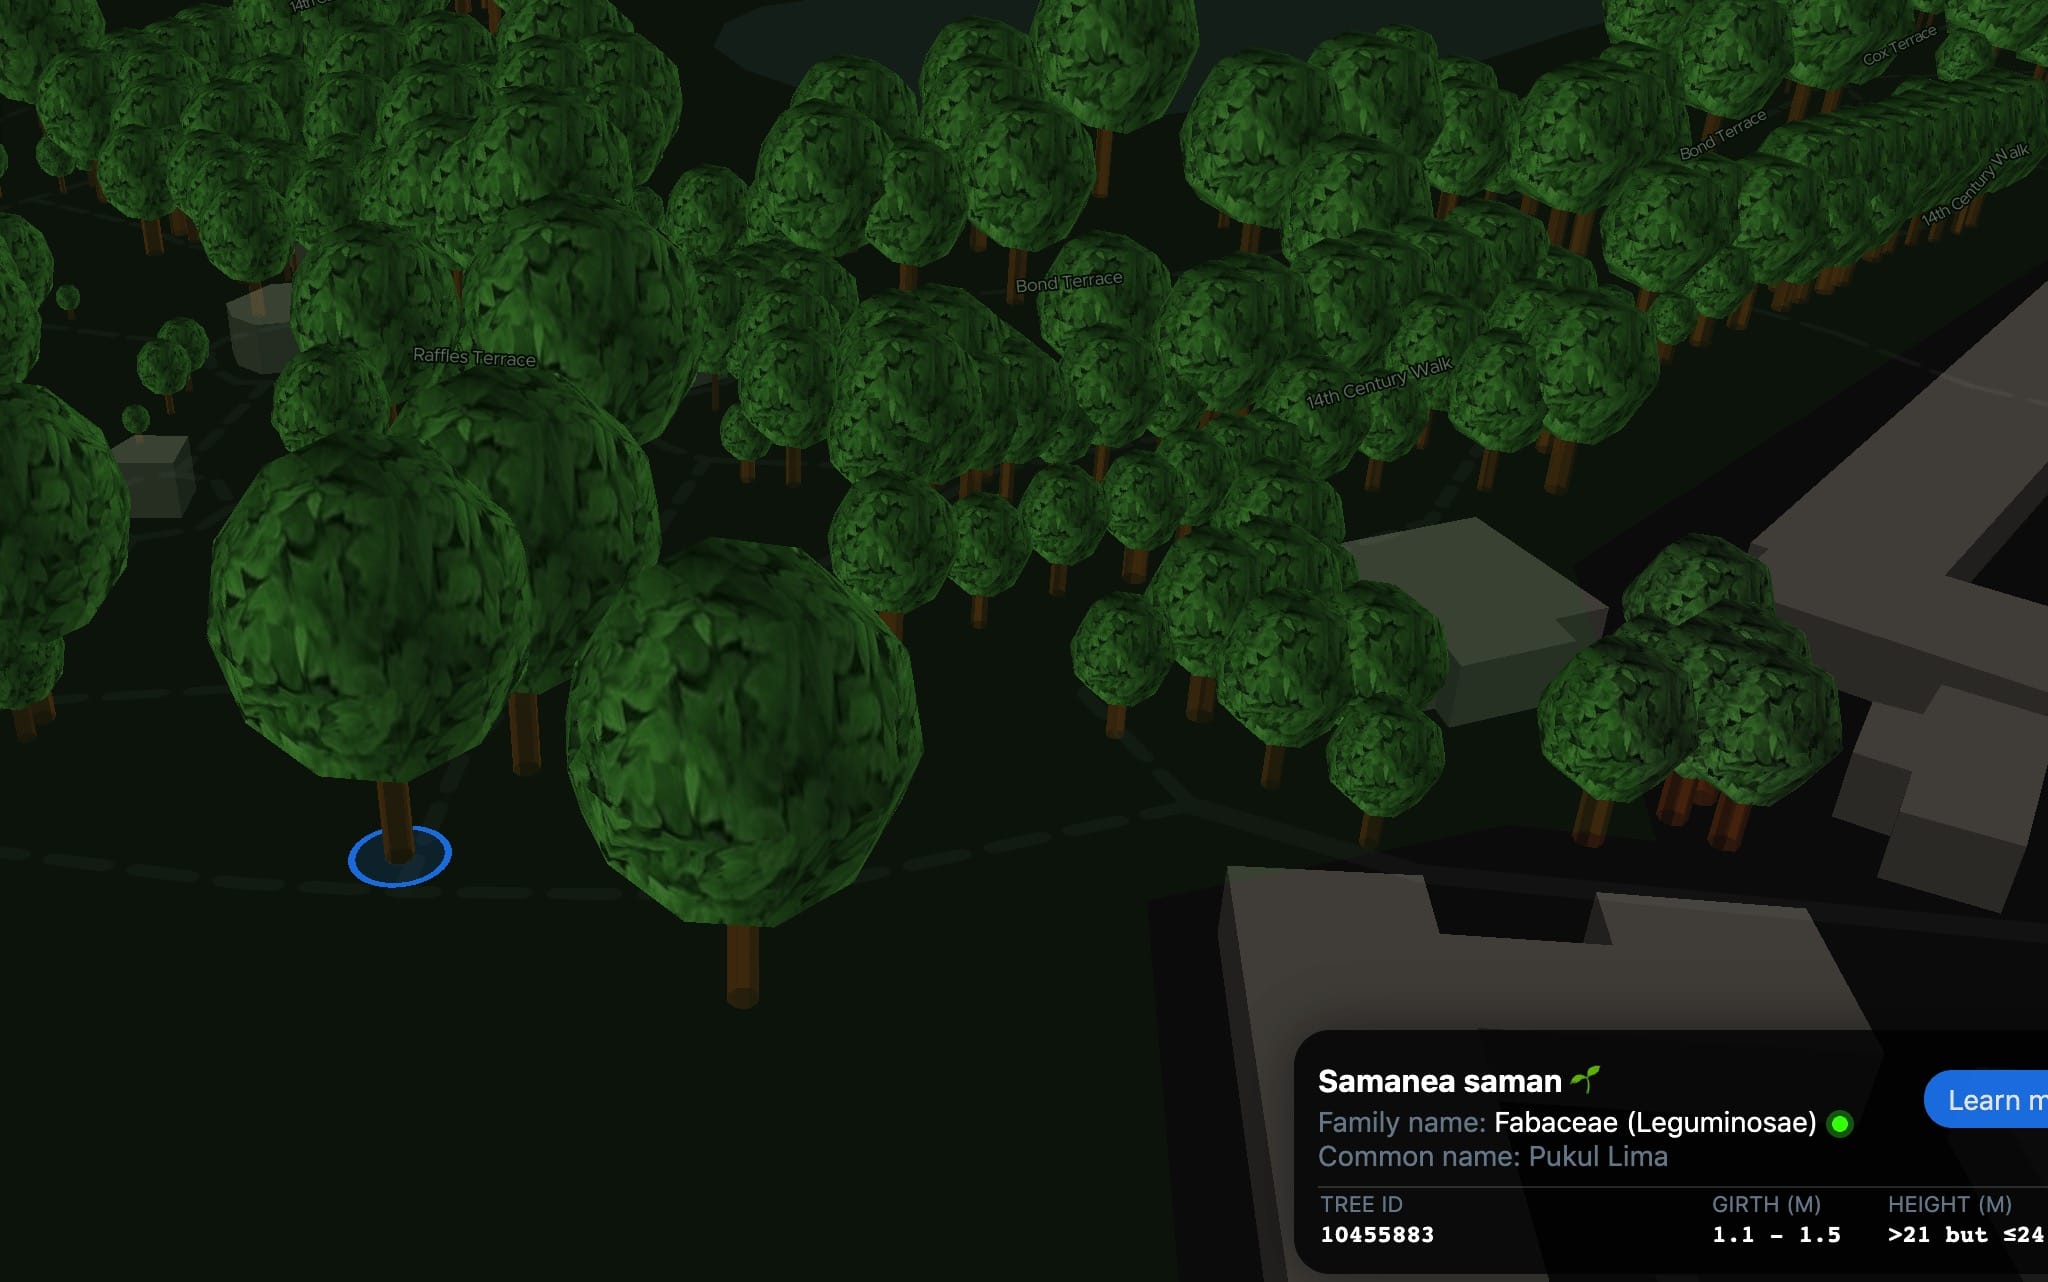 ExploreTrees.SG 3D realistic trees